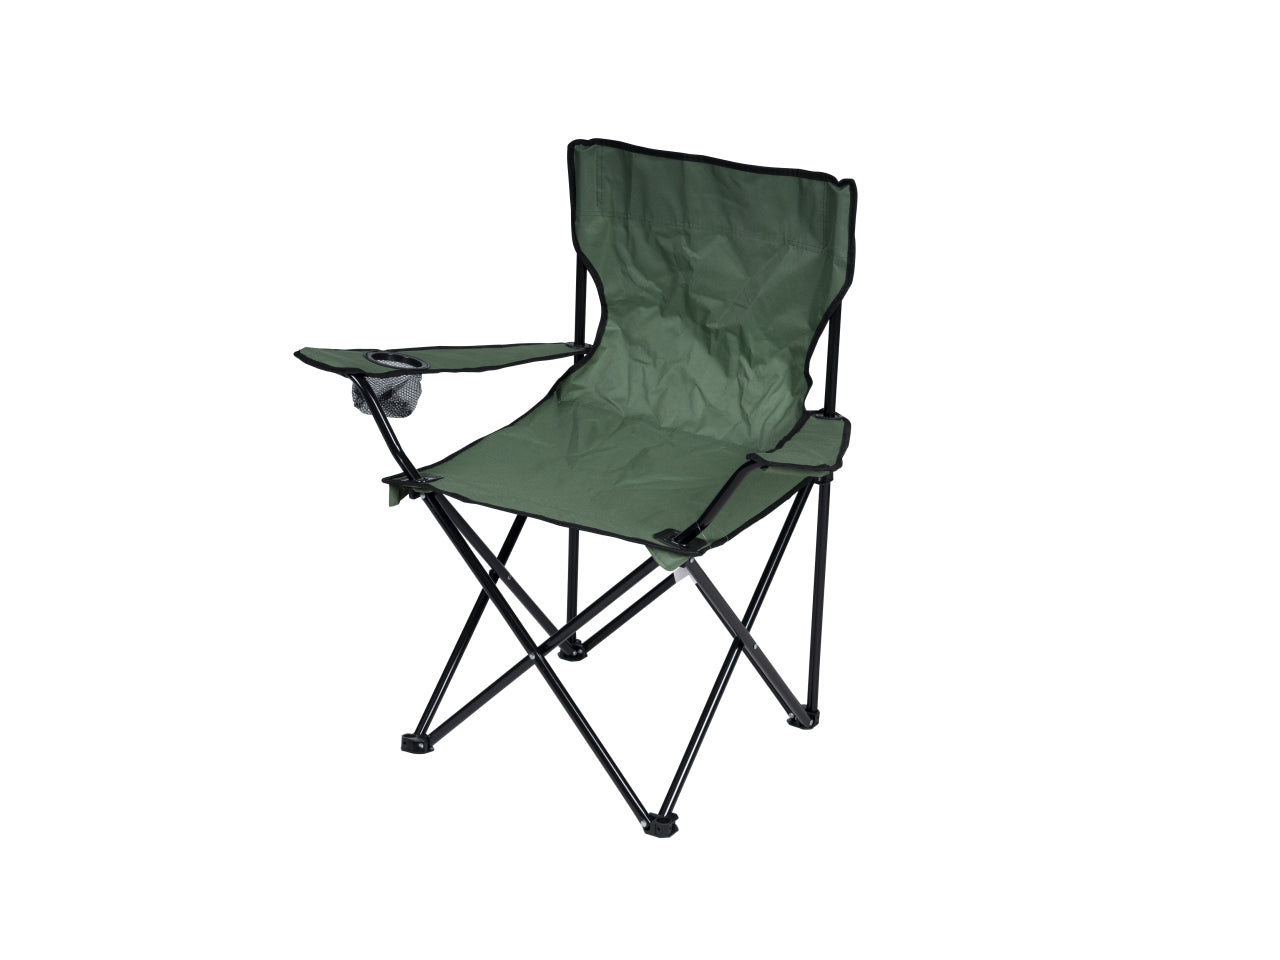 Sedia da campeggio pieghevole in acciaio e poliestere verde scuro con sacca contenitiva, portata max 120 kg 50x50x80 cm - Nataluna